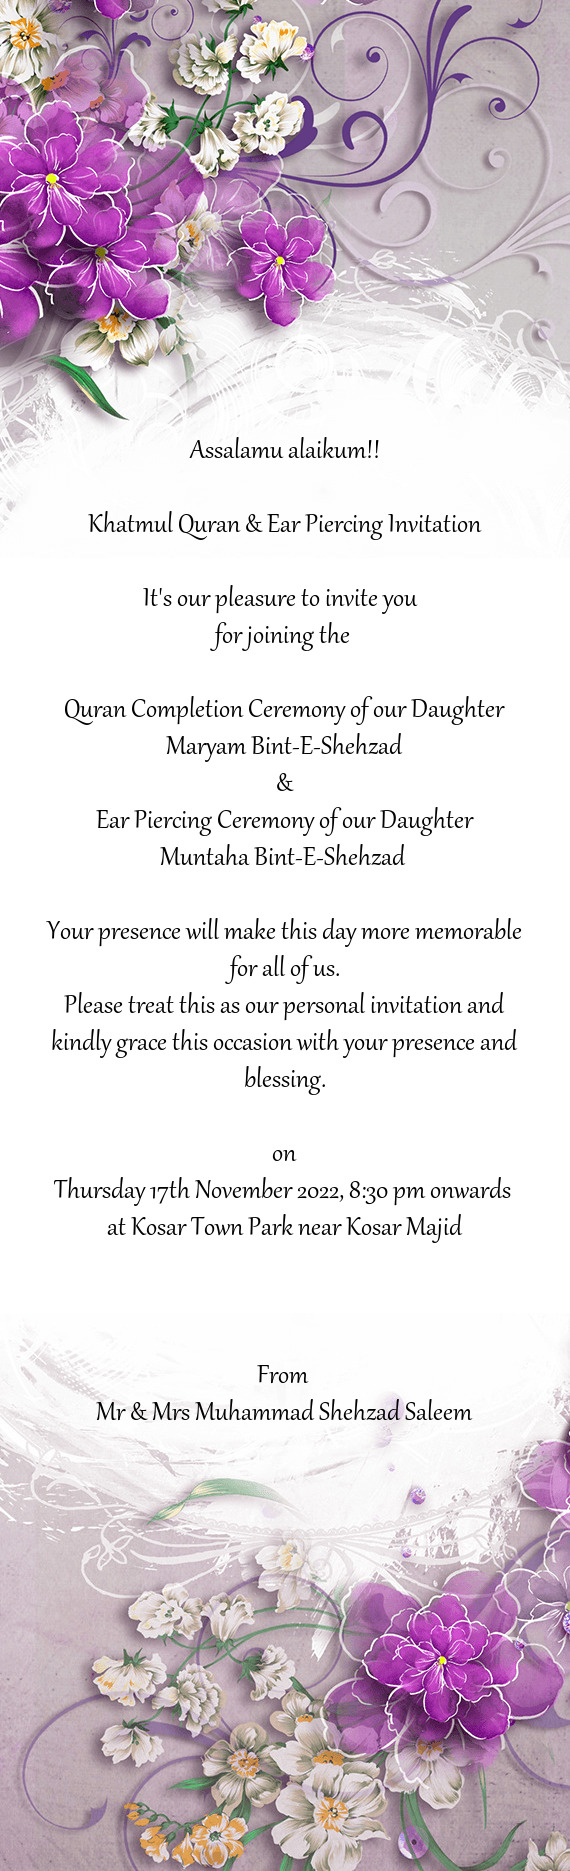 Khatmul Quran & Ear Piercing Invitation